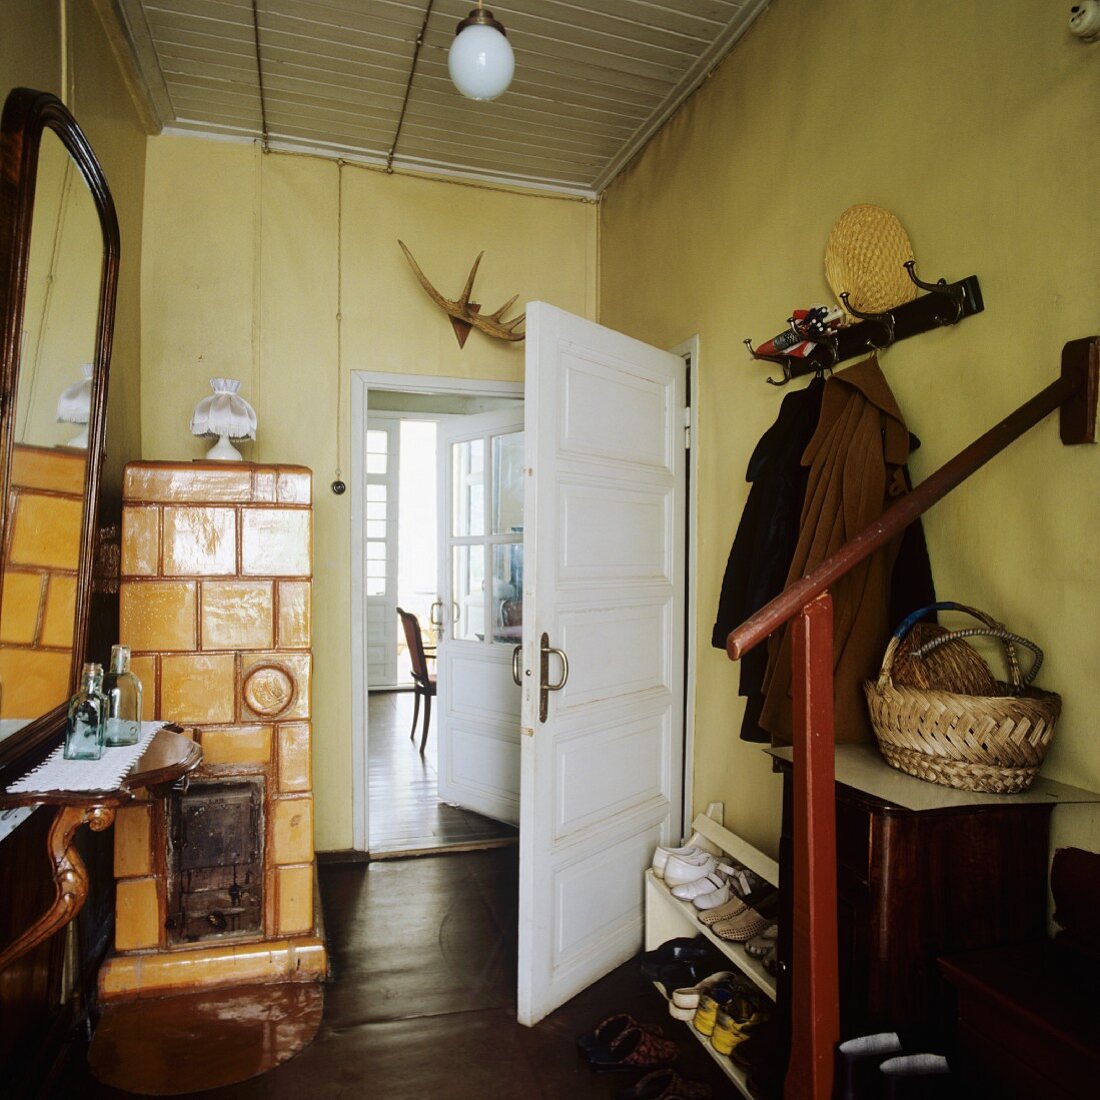 Offene Garderobe und Schuhregal gegenüber Spiegel mit Ablage und gemauerter Kamin mit gelben Fliesen im Vorraum